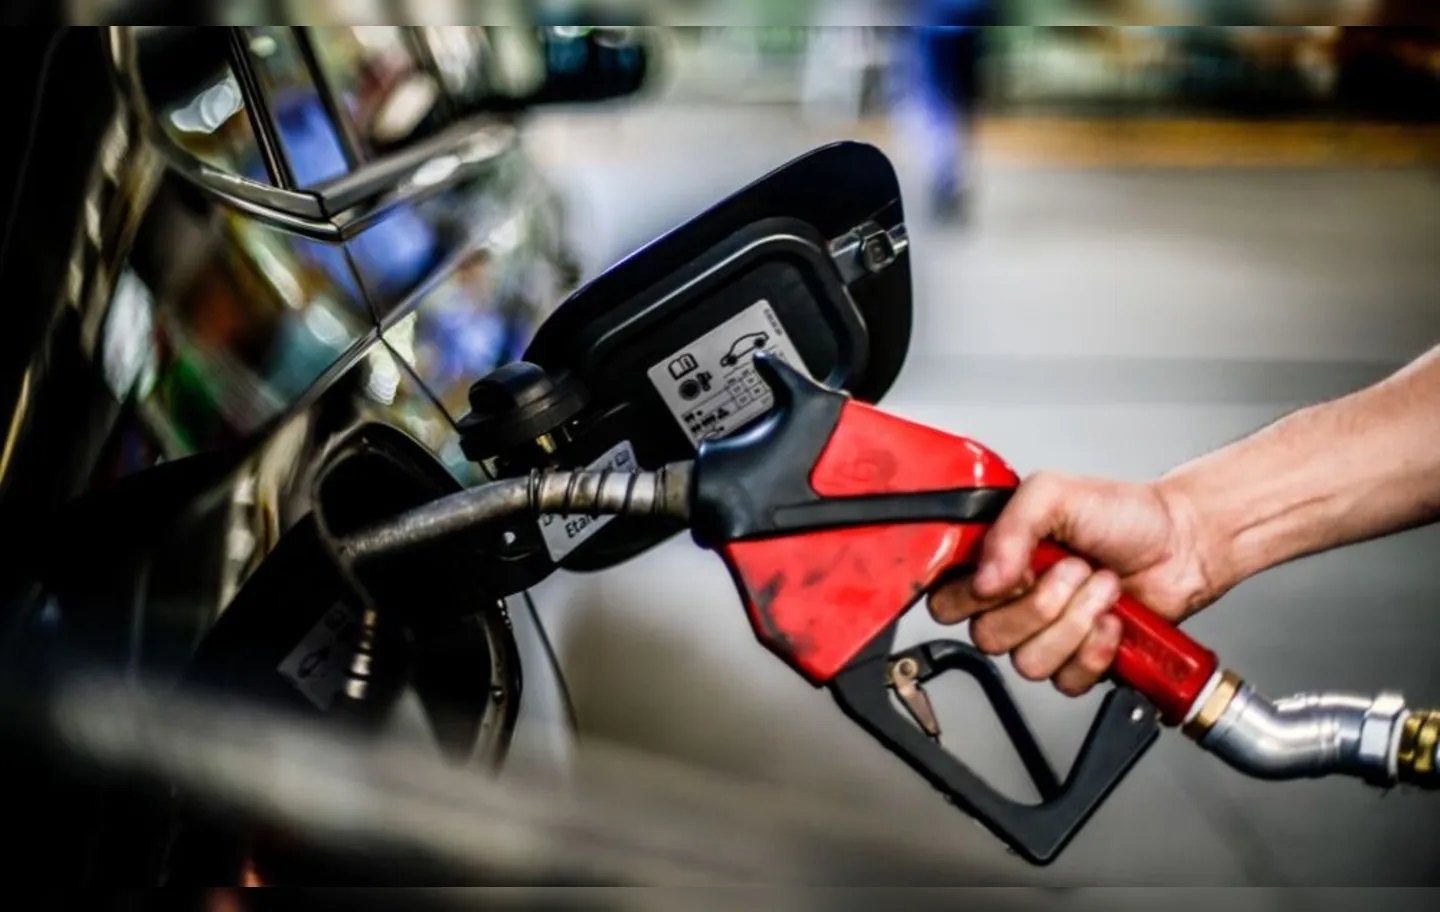 O litro de gasolina mais barato encontrado pela agência, na semana entre 3 e 9 de julho, foi de R$ 5,22, no Amapá, na capital Macapá